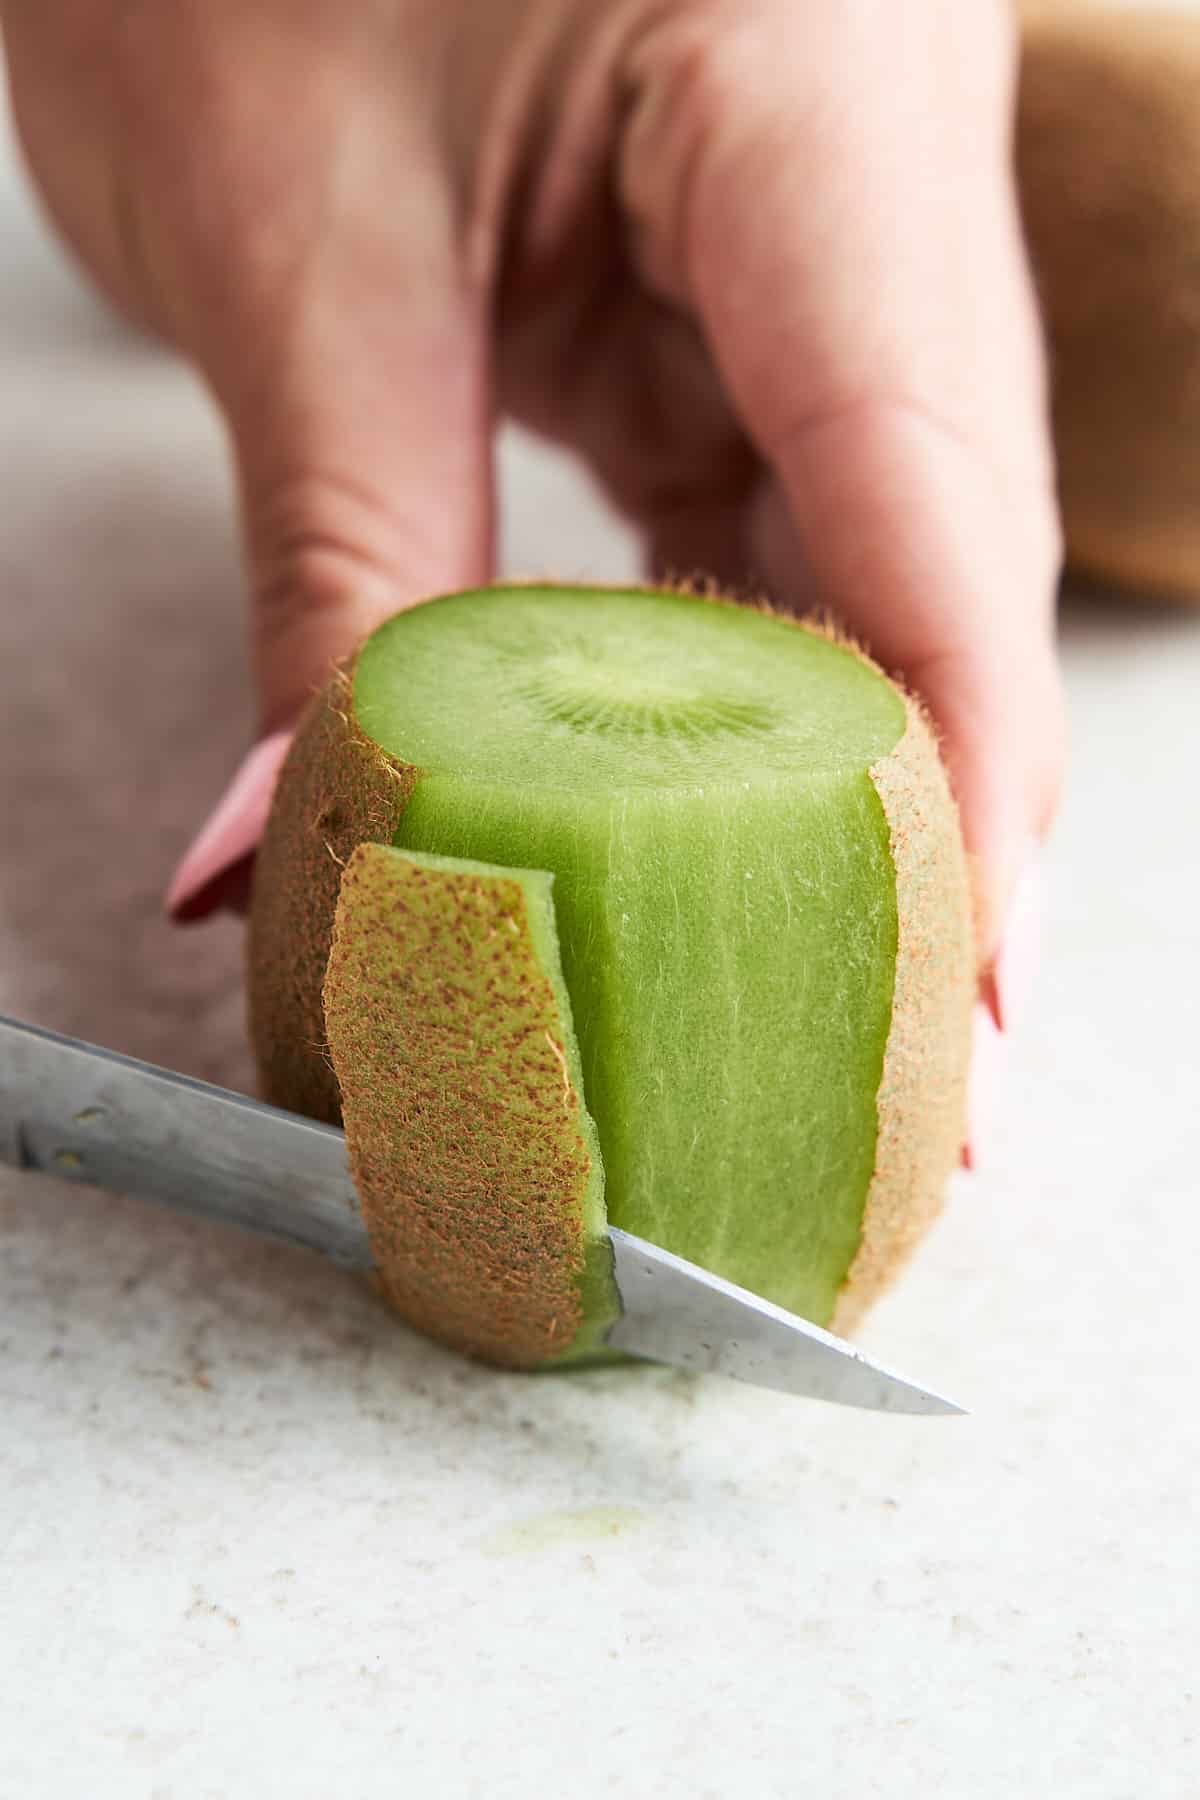 Cutting away the skin of a kiwi.